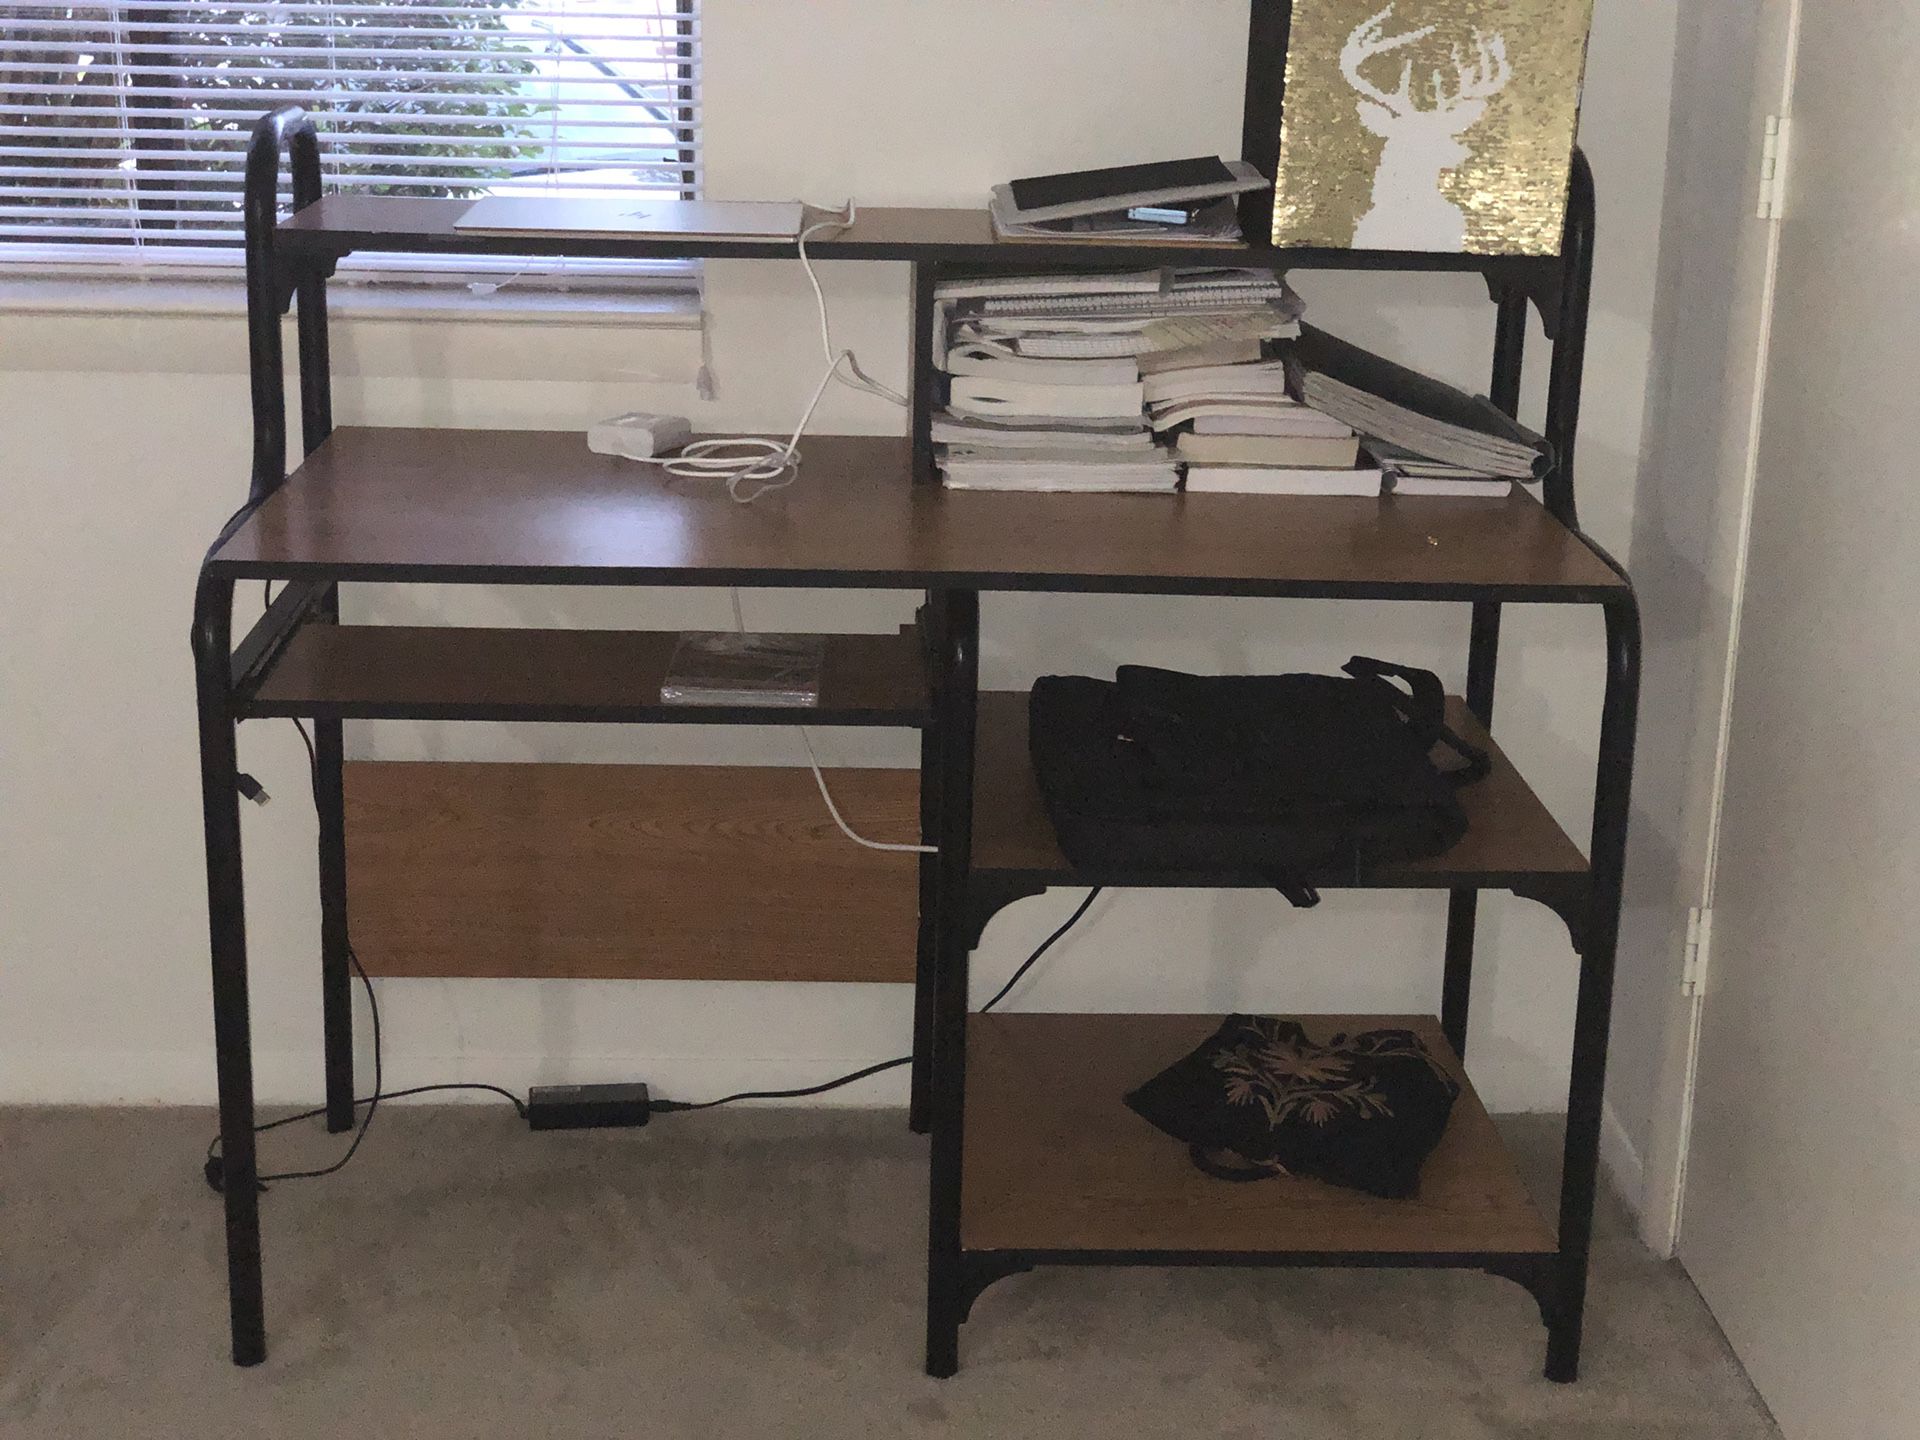 6 layer compartment/study desk